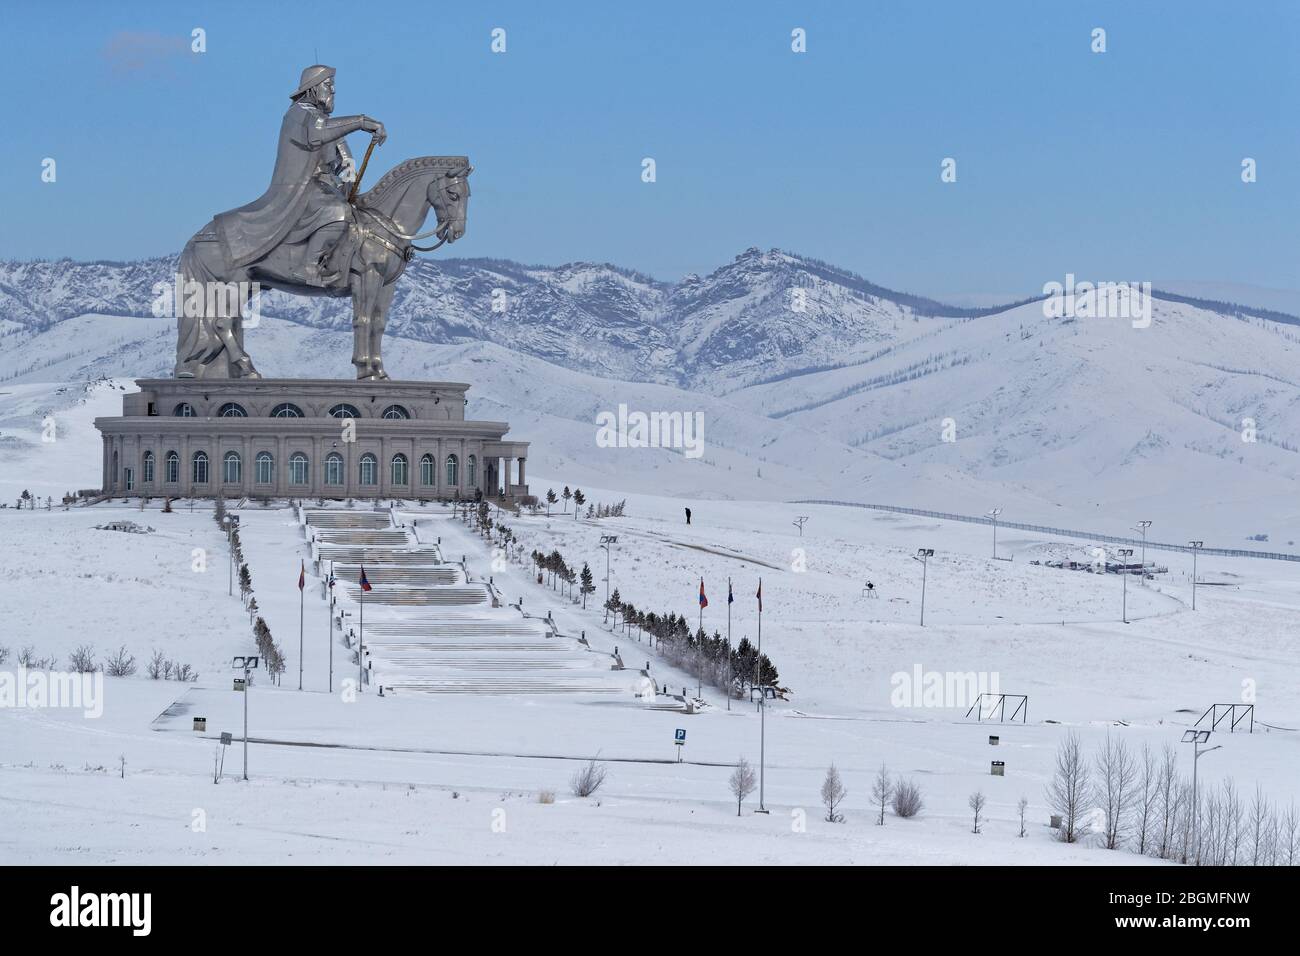 TSONJIN BOLDOG, MONGOLIE, 9 mars 2020 : la statue équestre Gengis Khan, une statue de 40 mètres de haut de Gengis Khan à cheval, sur la rive de la Banque D'Images